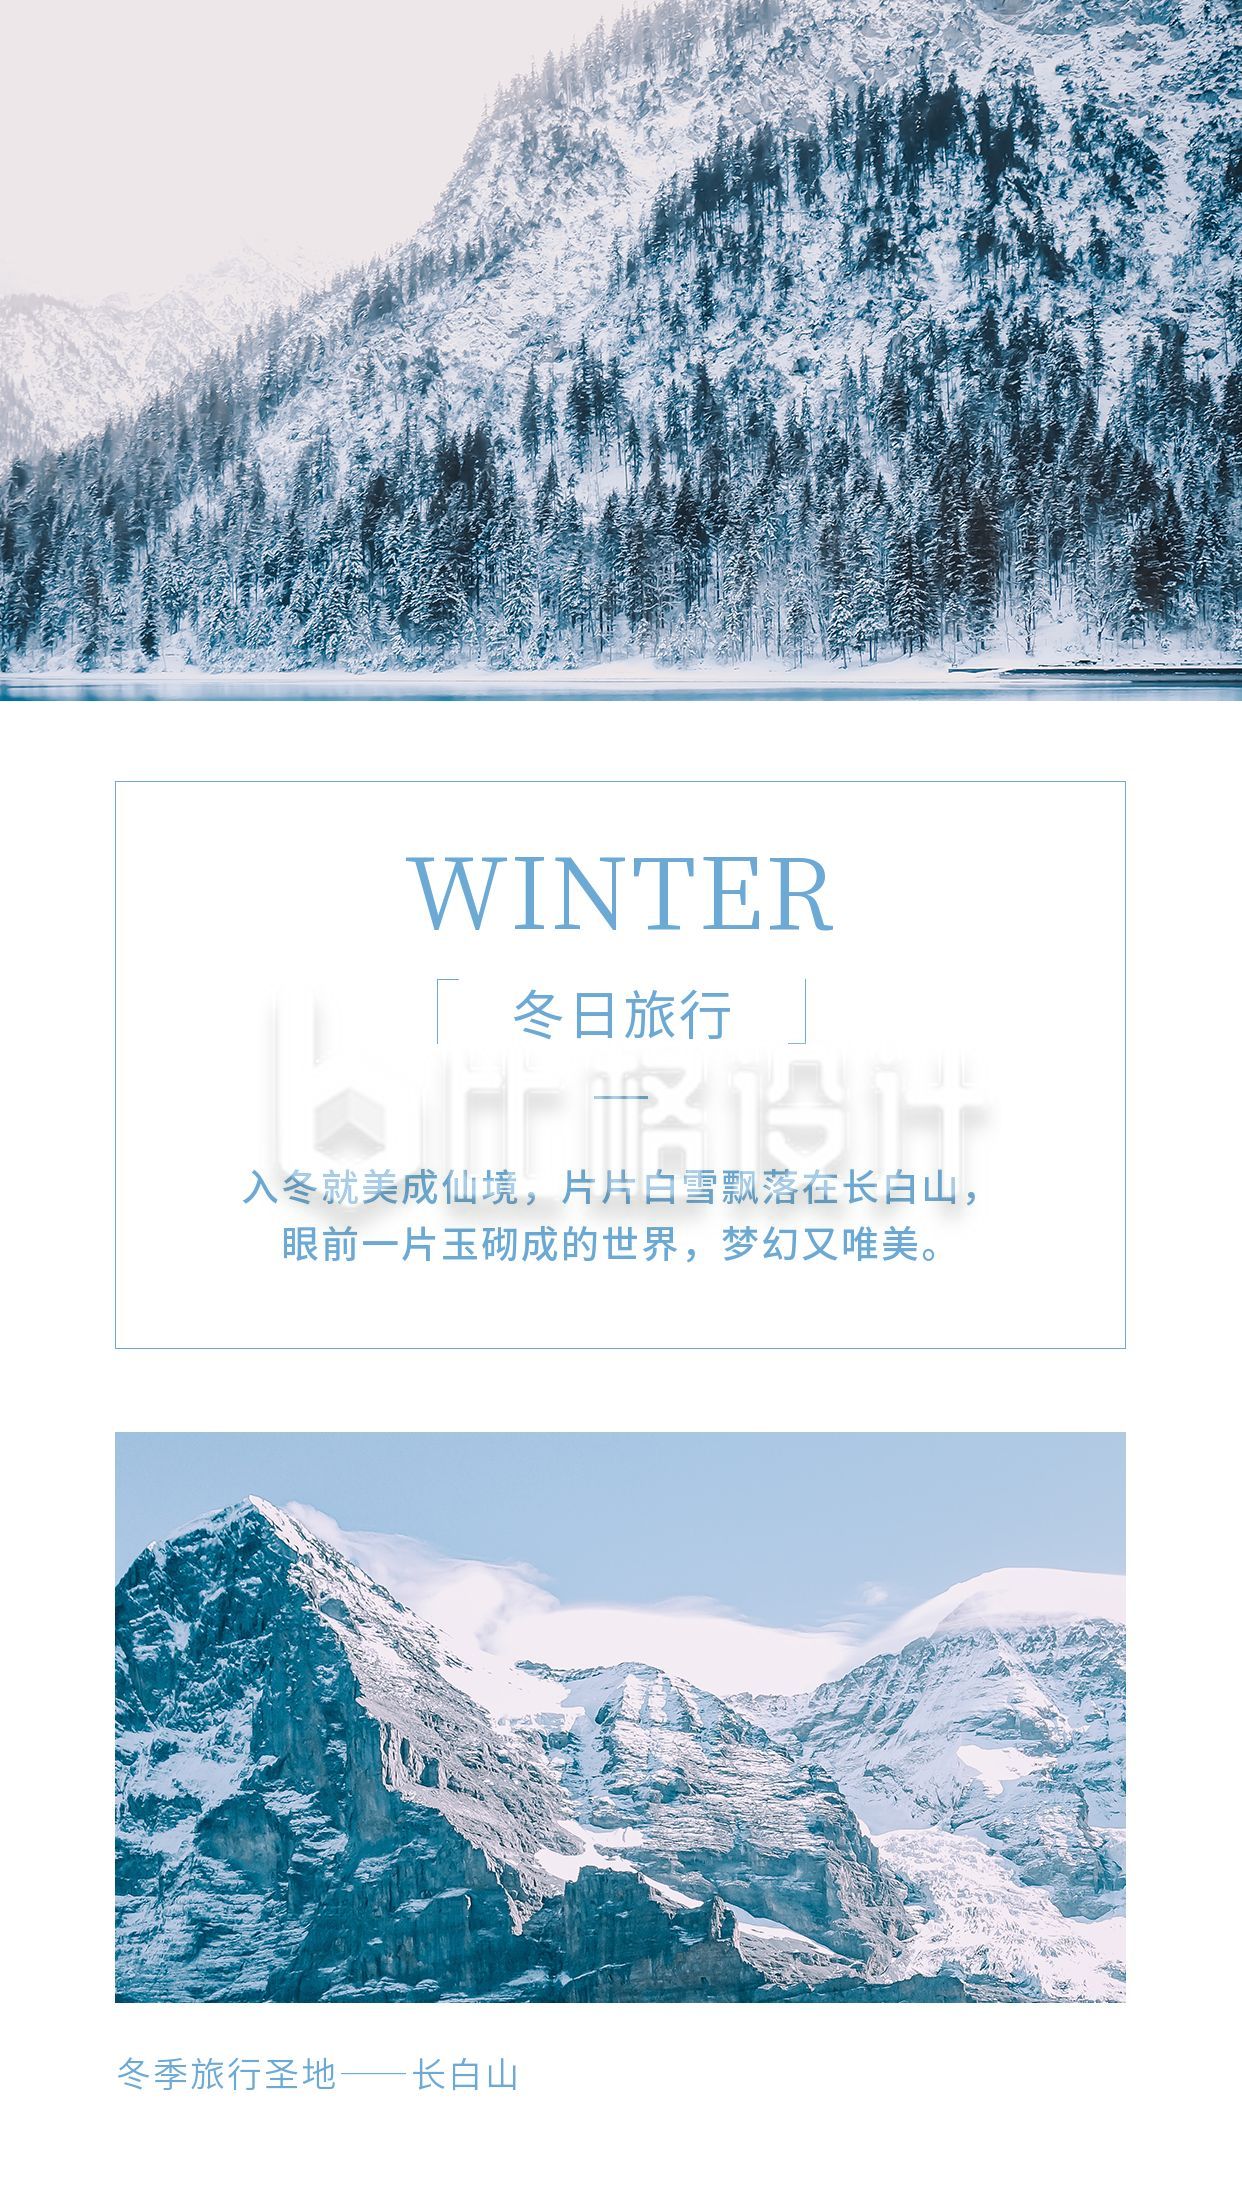 冬季旅行圣地长白山蓝白色冬景竖版配图